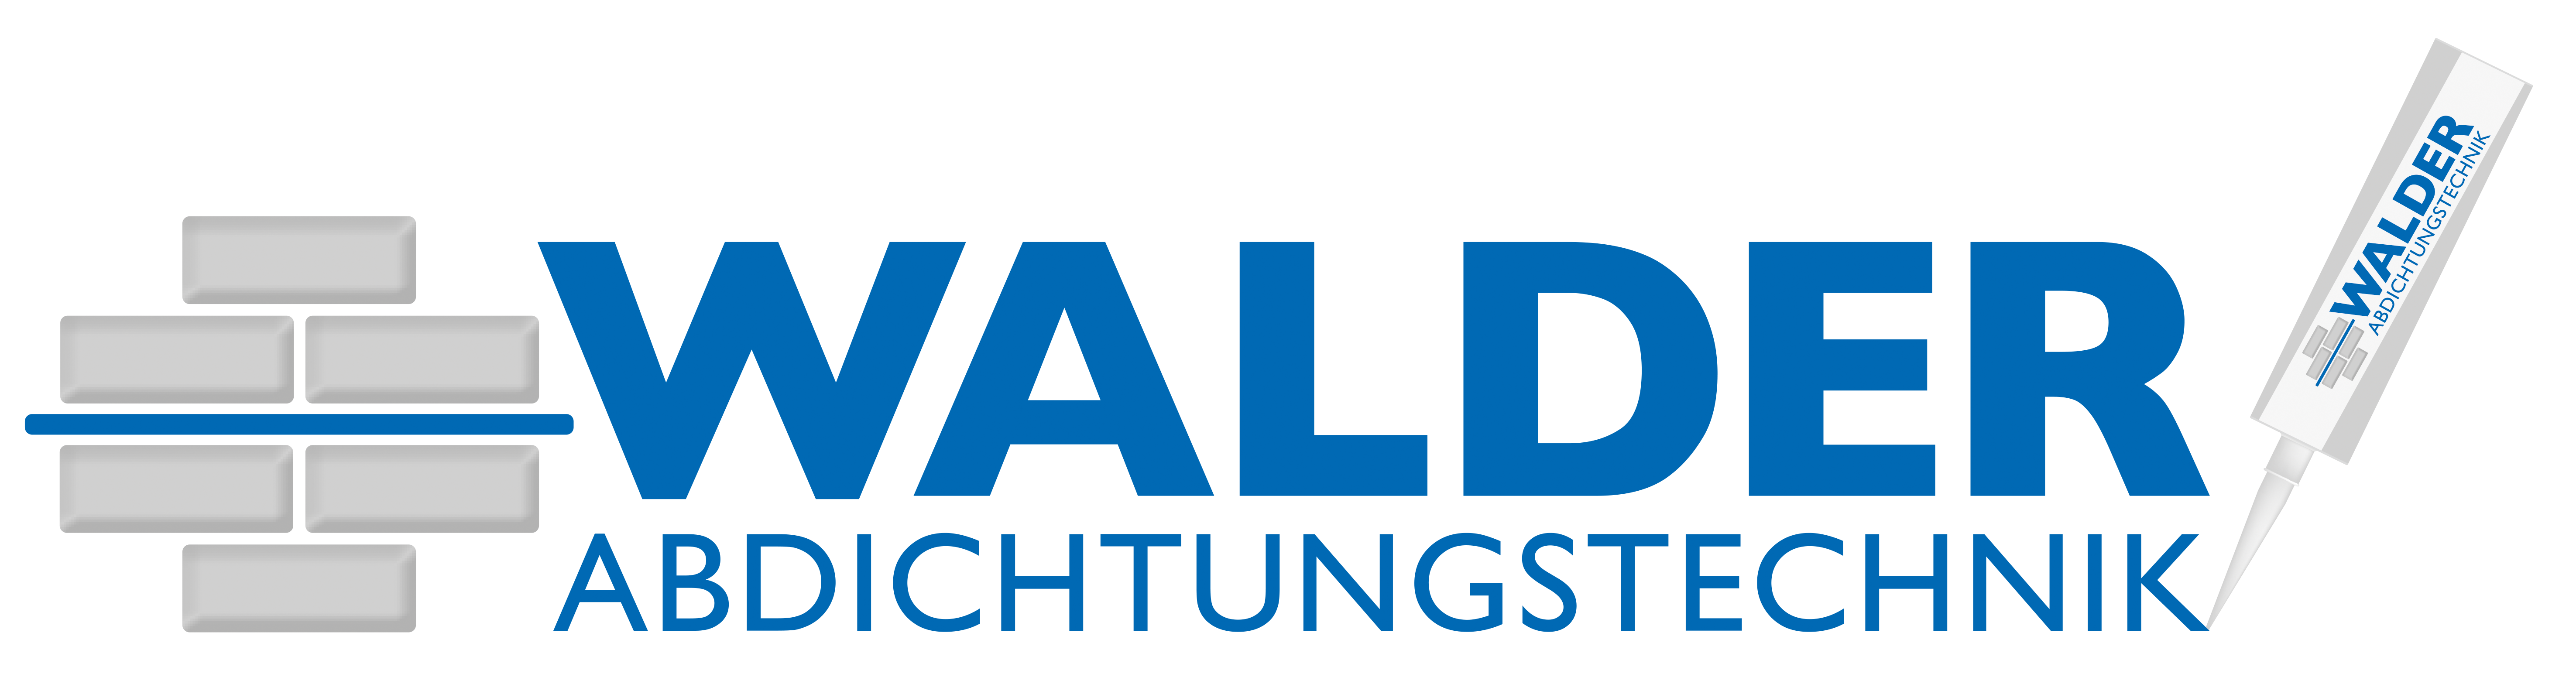 Walder Abdichtungstechnik GmbH